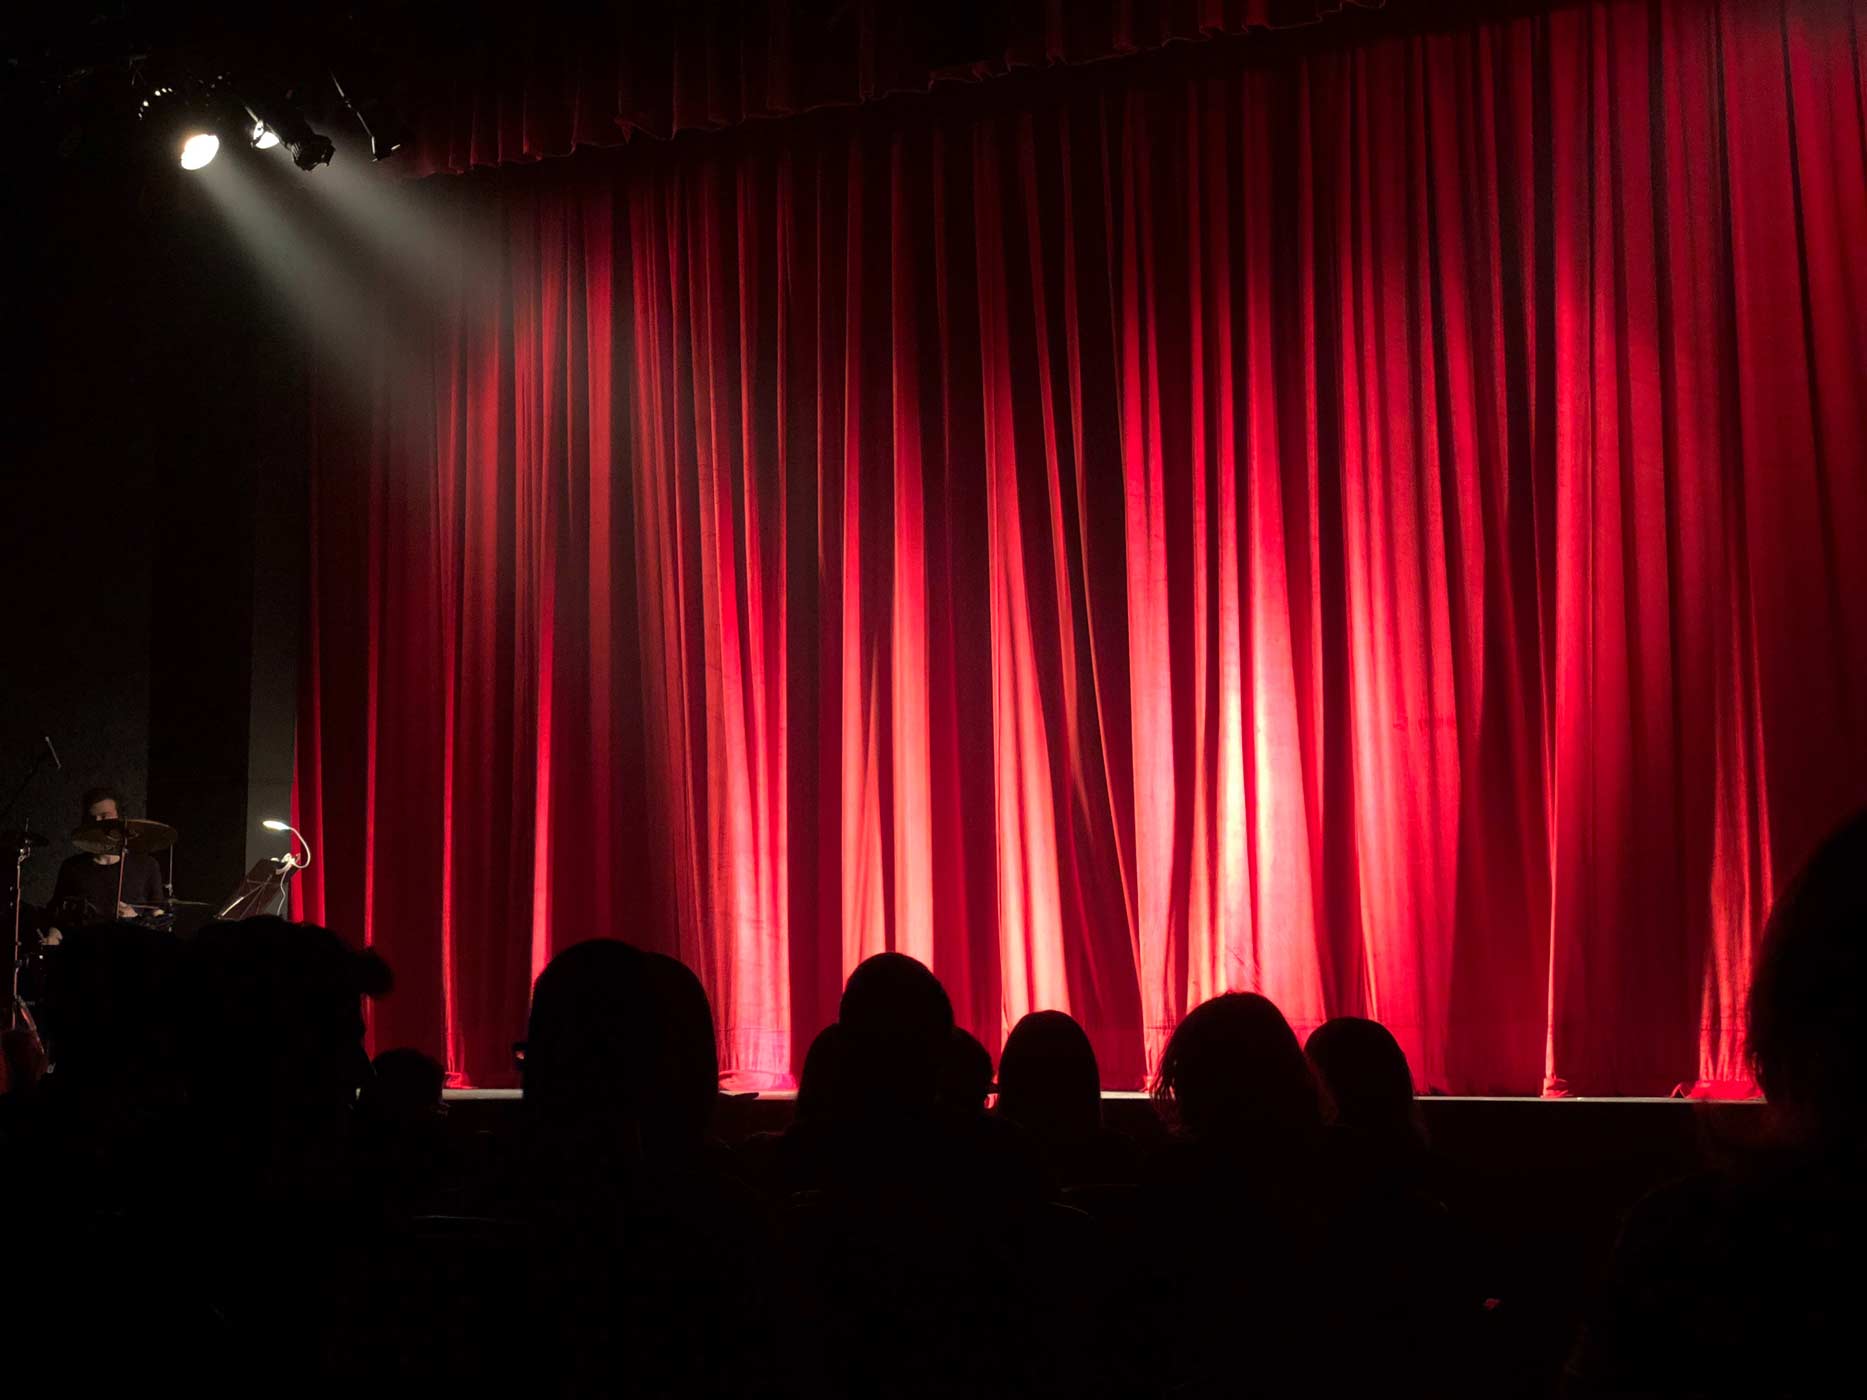 Roter Theatervorhang im Scheinwerferlicht